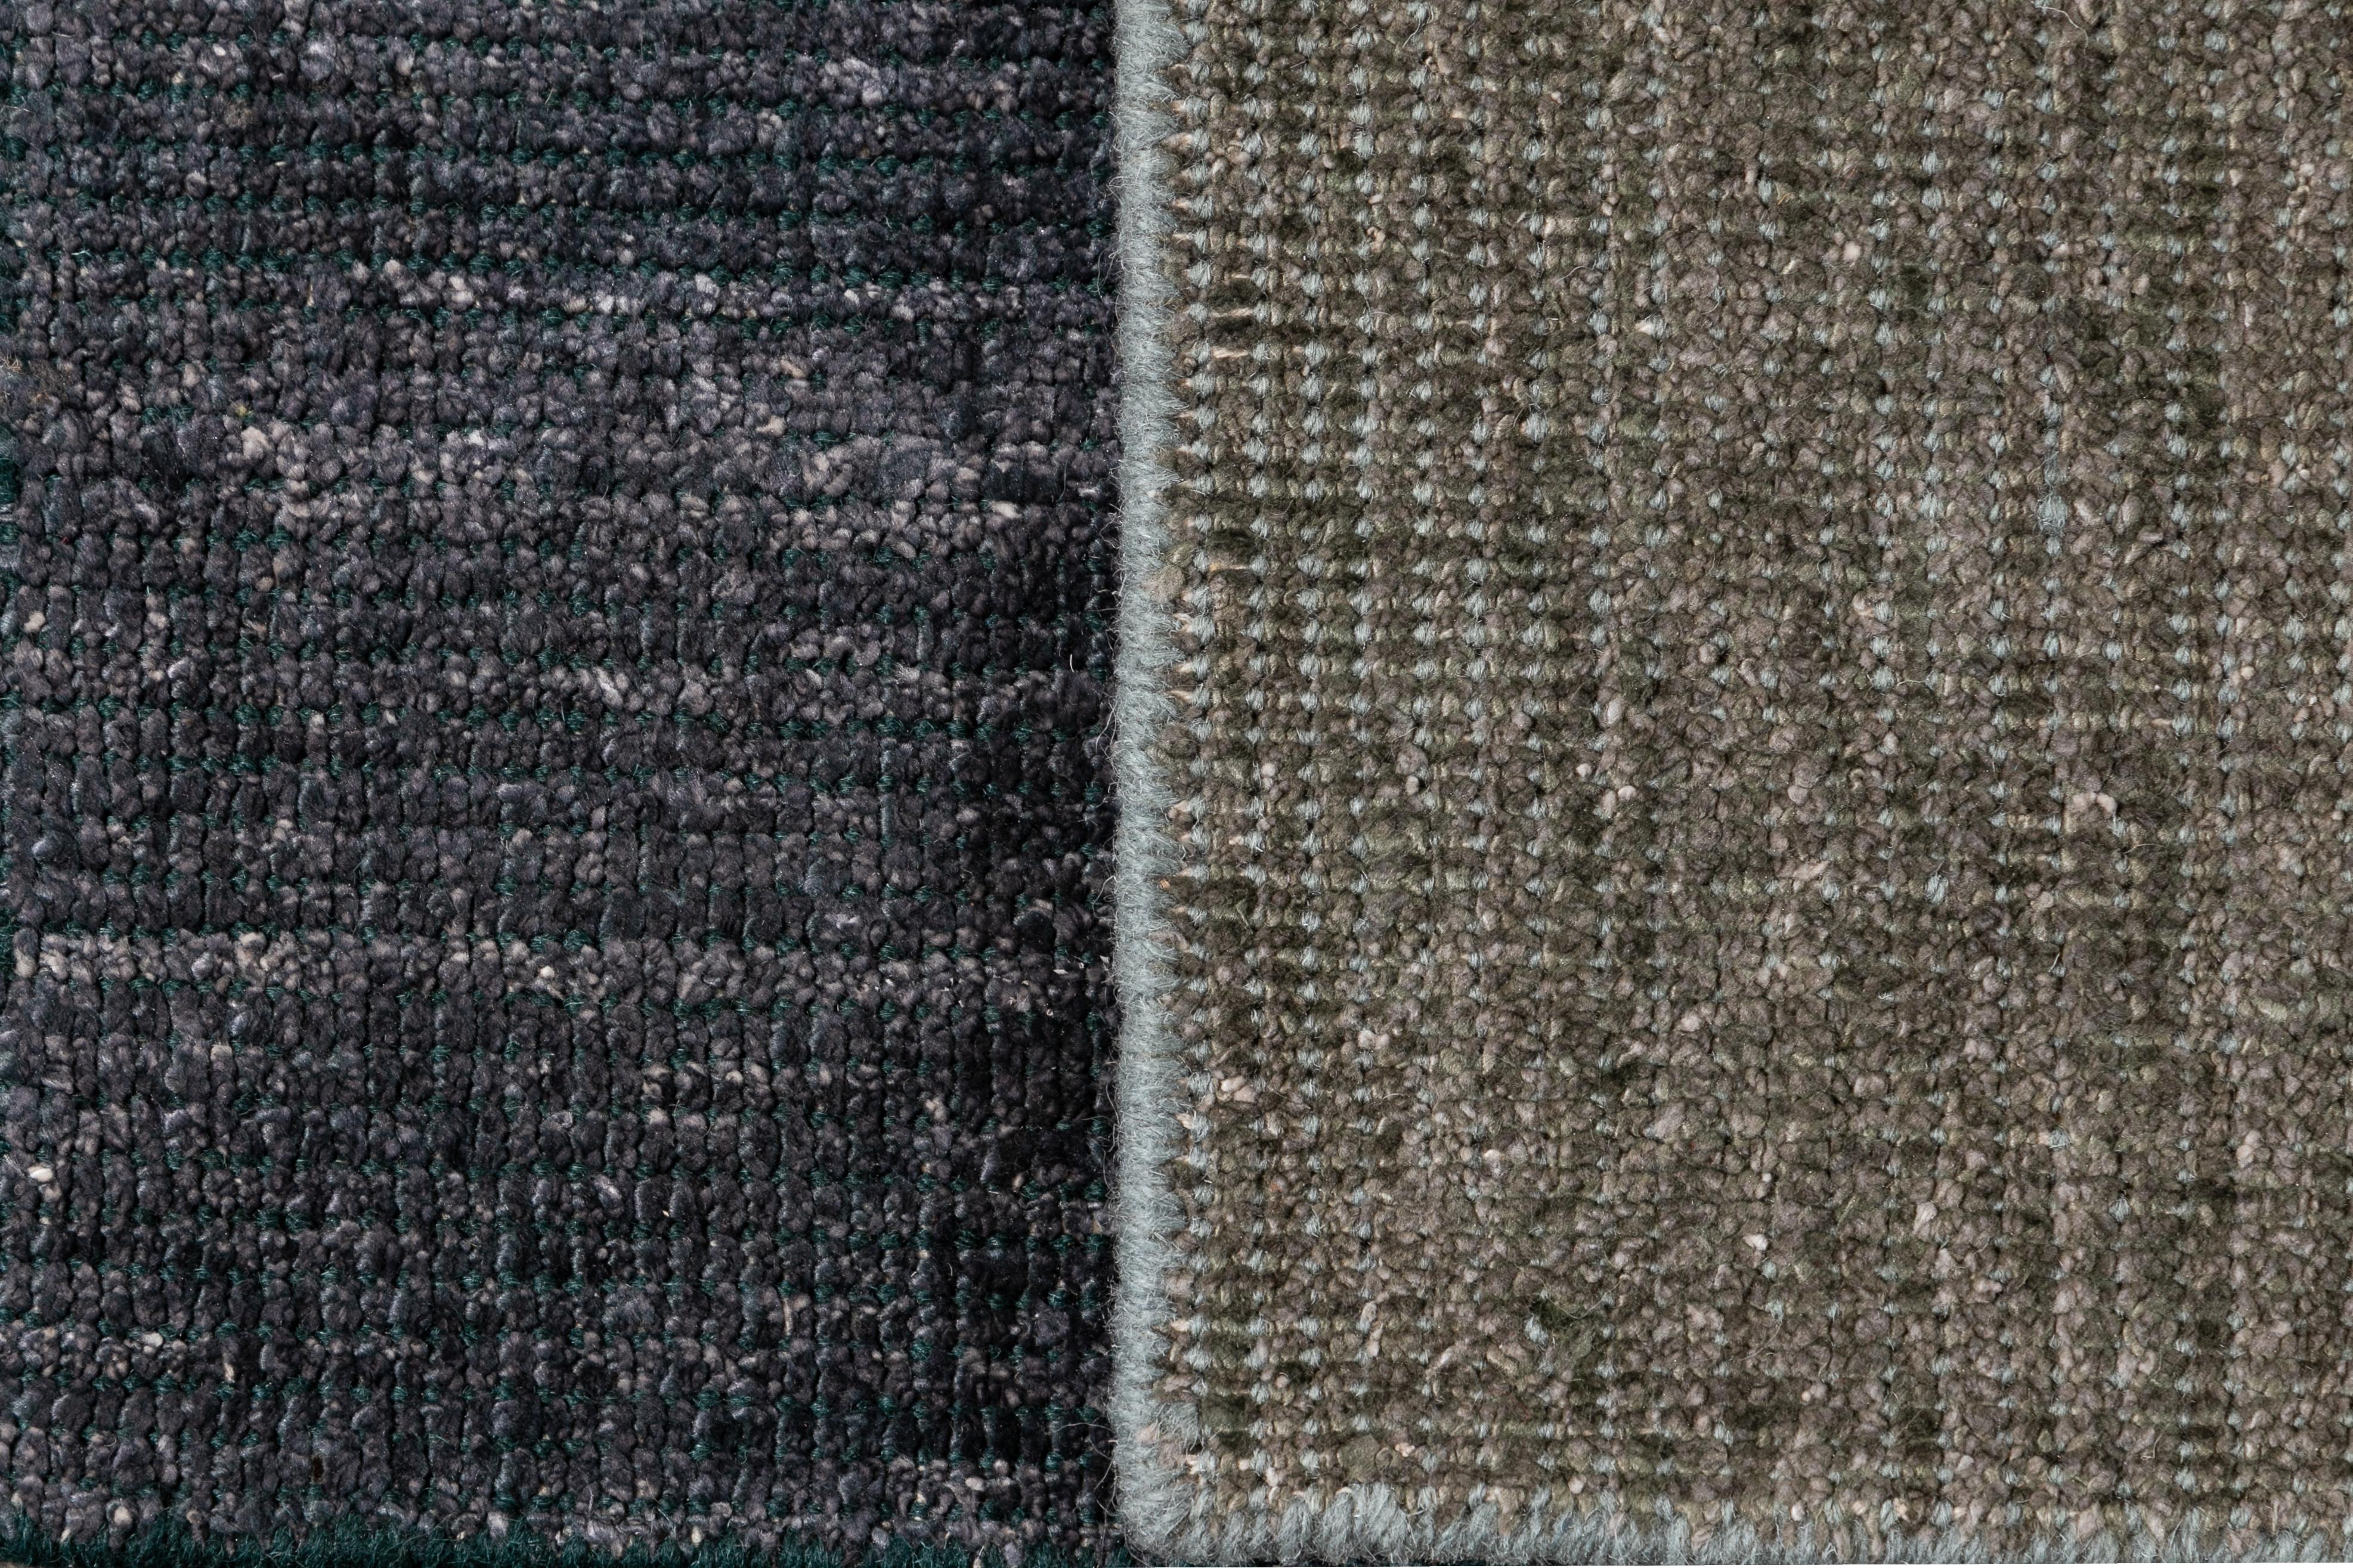 Individueller Boho-Teppich aus Wolle und Seide. Kundenspezifische Größen und Farben auf Bestellung.

Material: Wolle oder Bambusseide
Vorlaufzeit: Ungefähr 12 Wochen
Verfügbare Farben: über 100 Farbtöne.
Hergestellt in Indien.

(Hinweis: Der